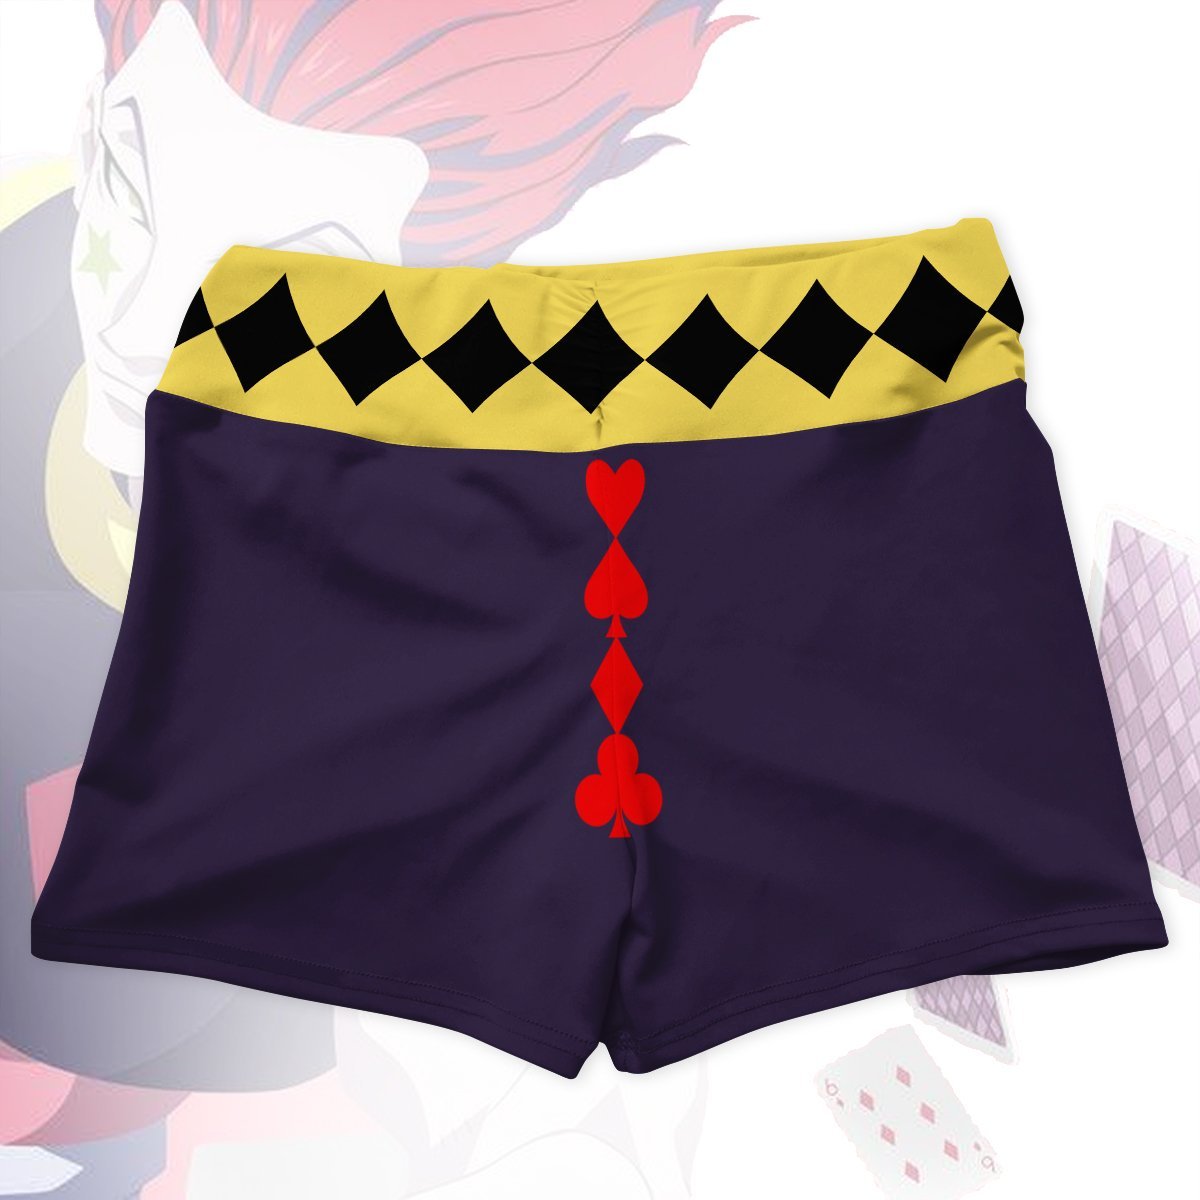 hisoka morow active wear set 944750 - Anime Swimsuits